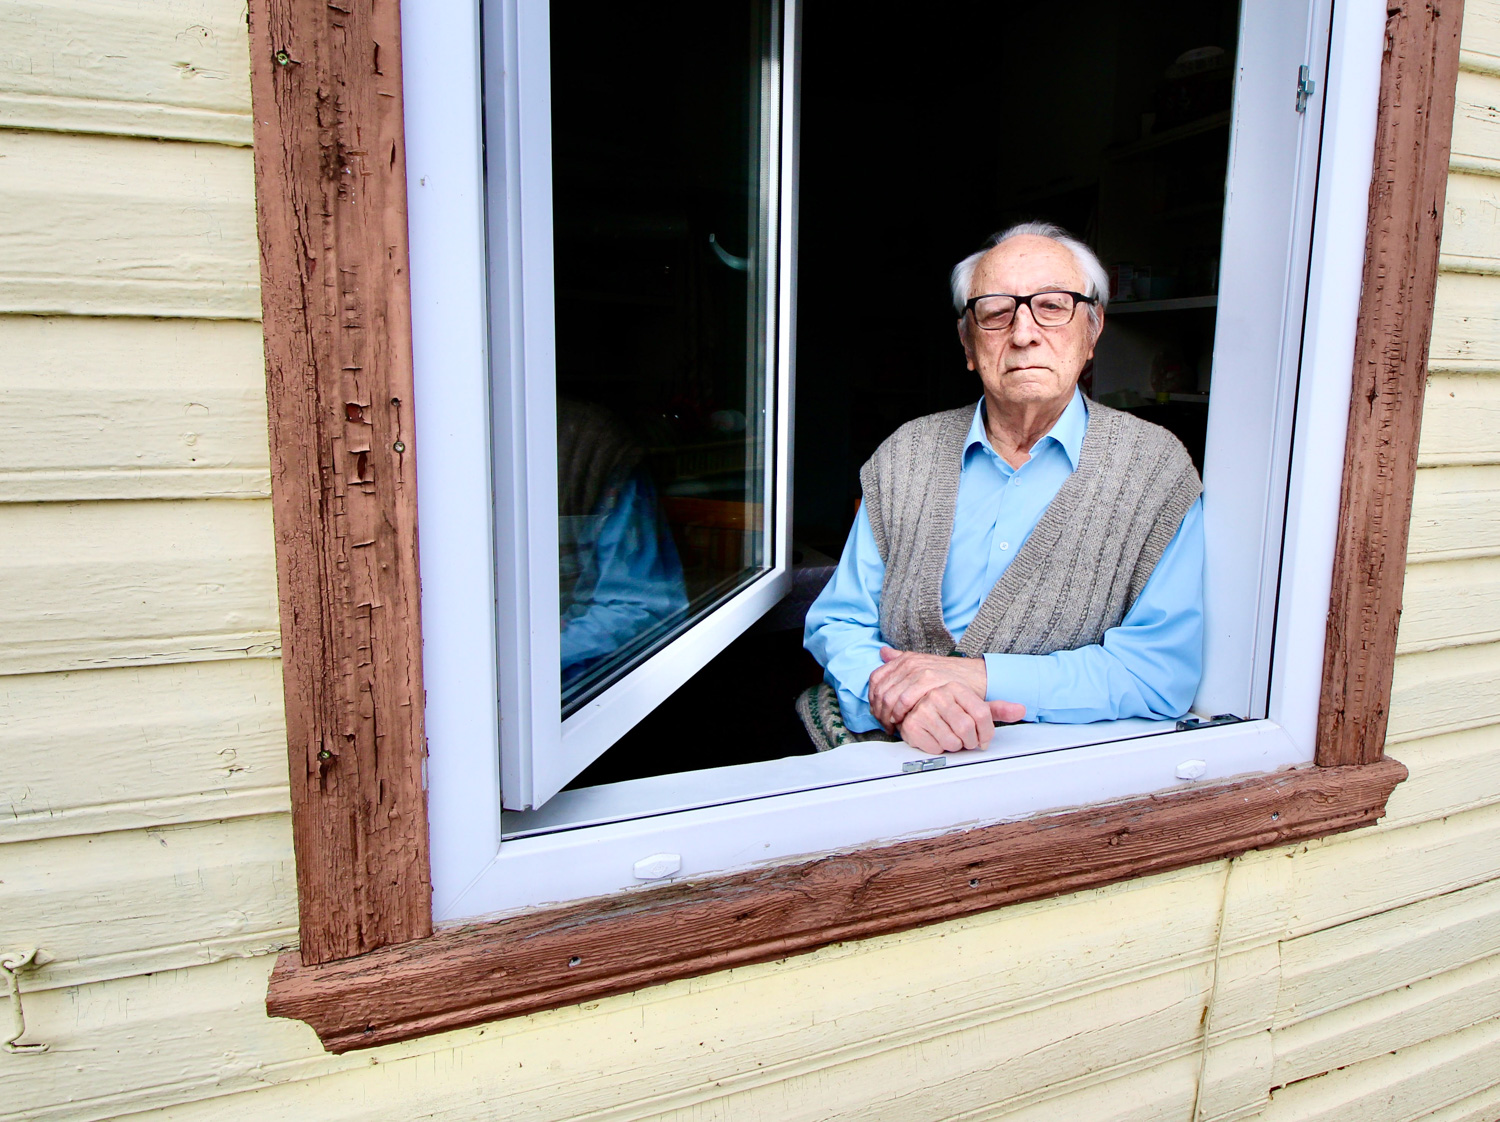 Hillar Kalda oma  Rõuge kodu aknal  4. märtsil 2022. FOTO: Kalev Annom